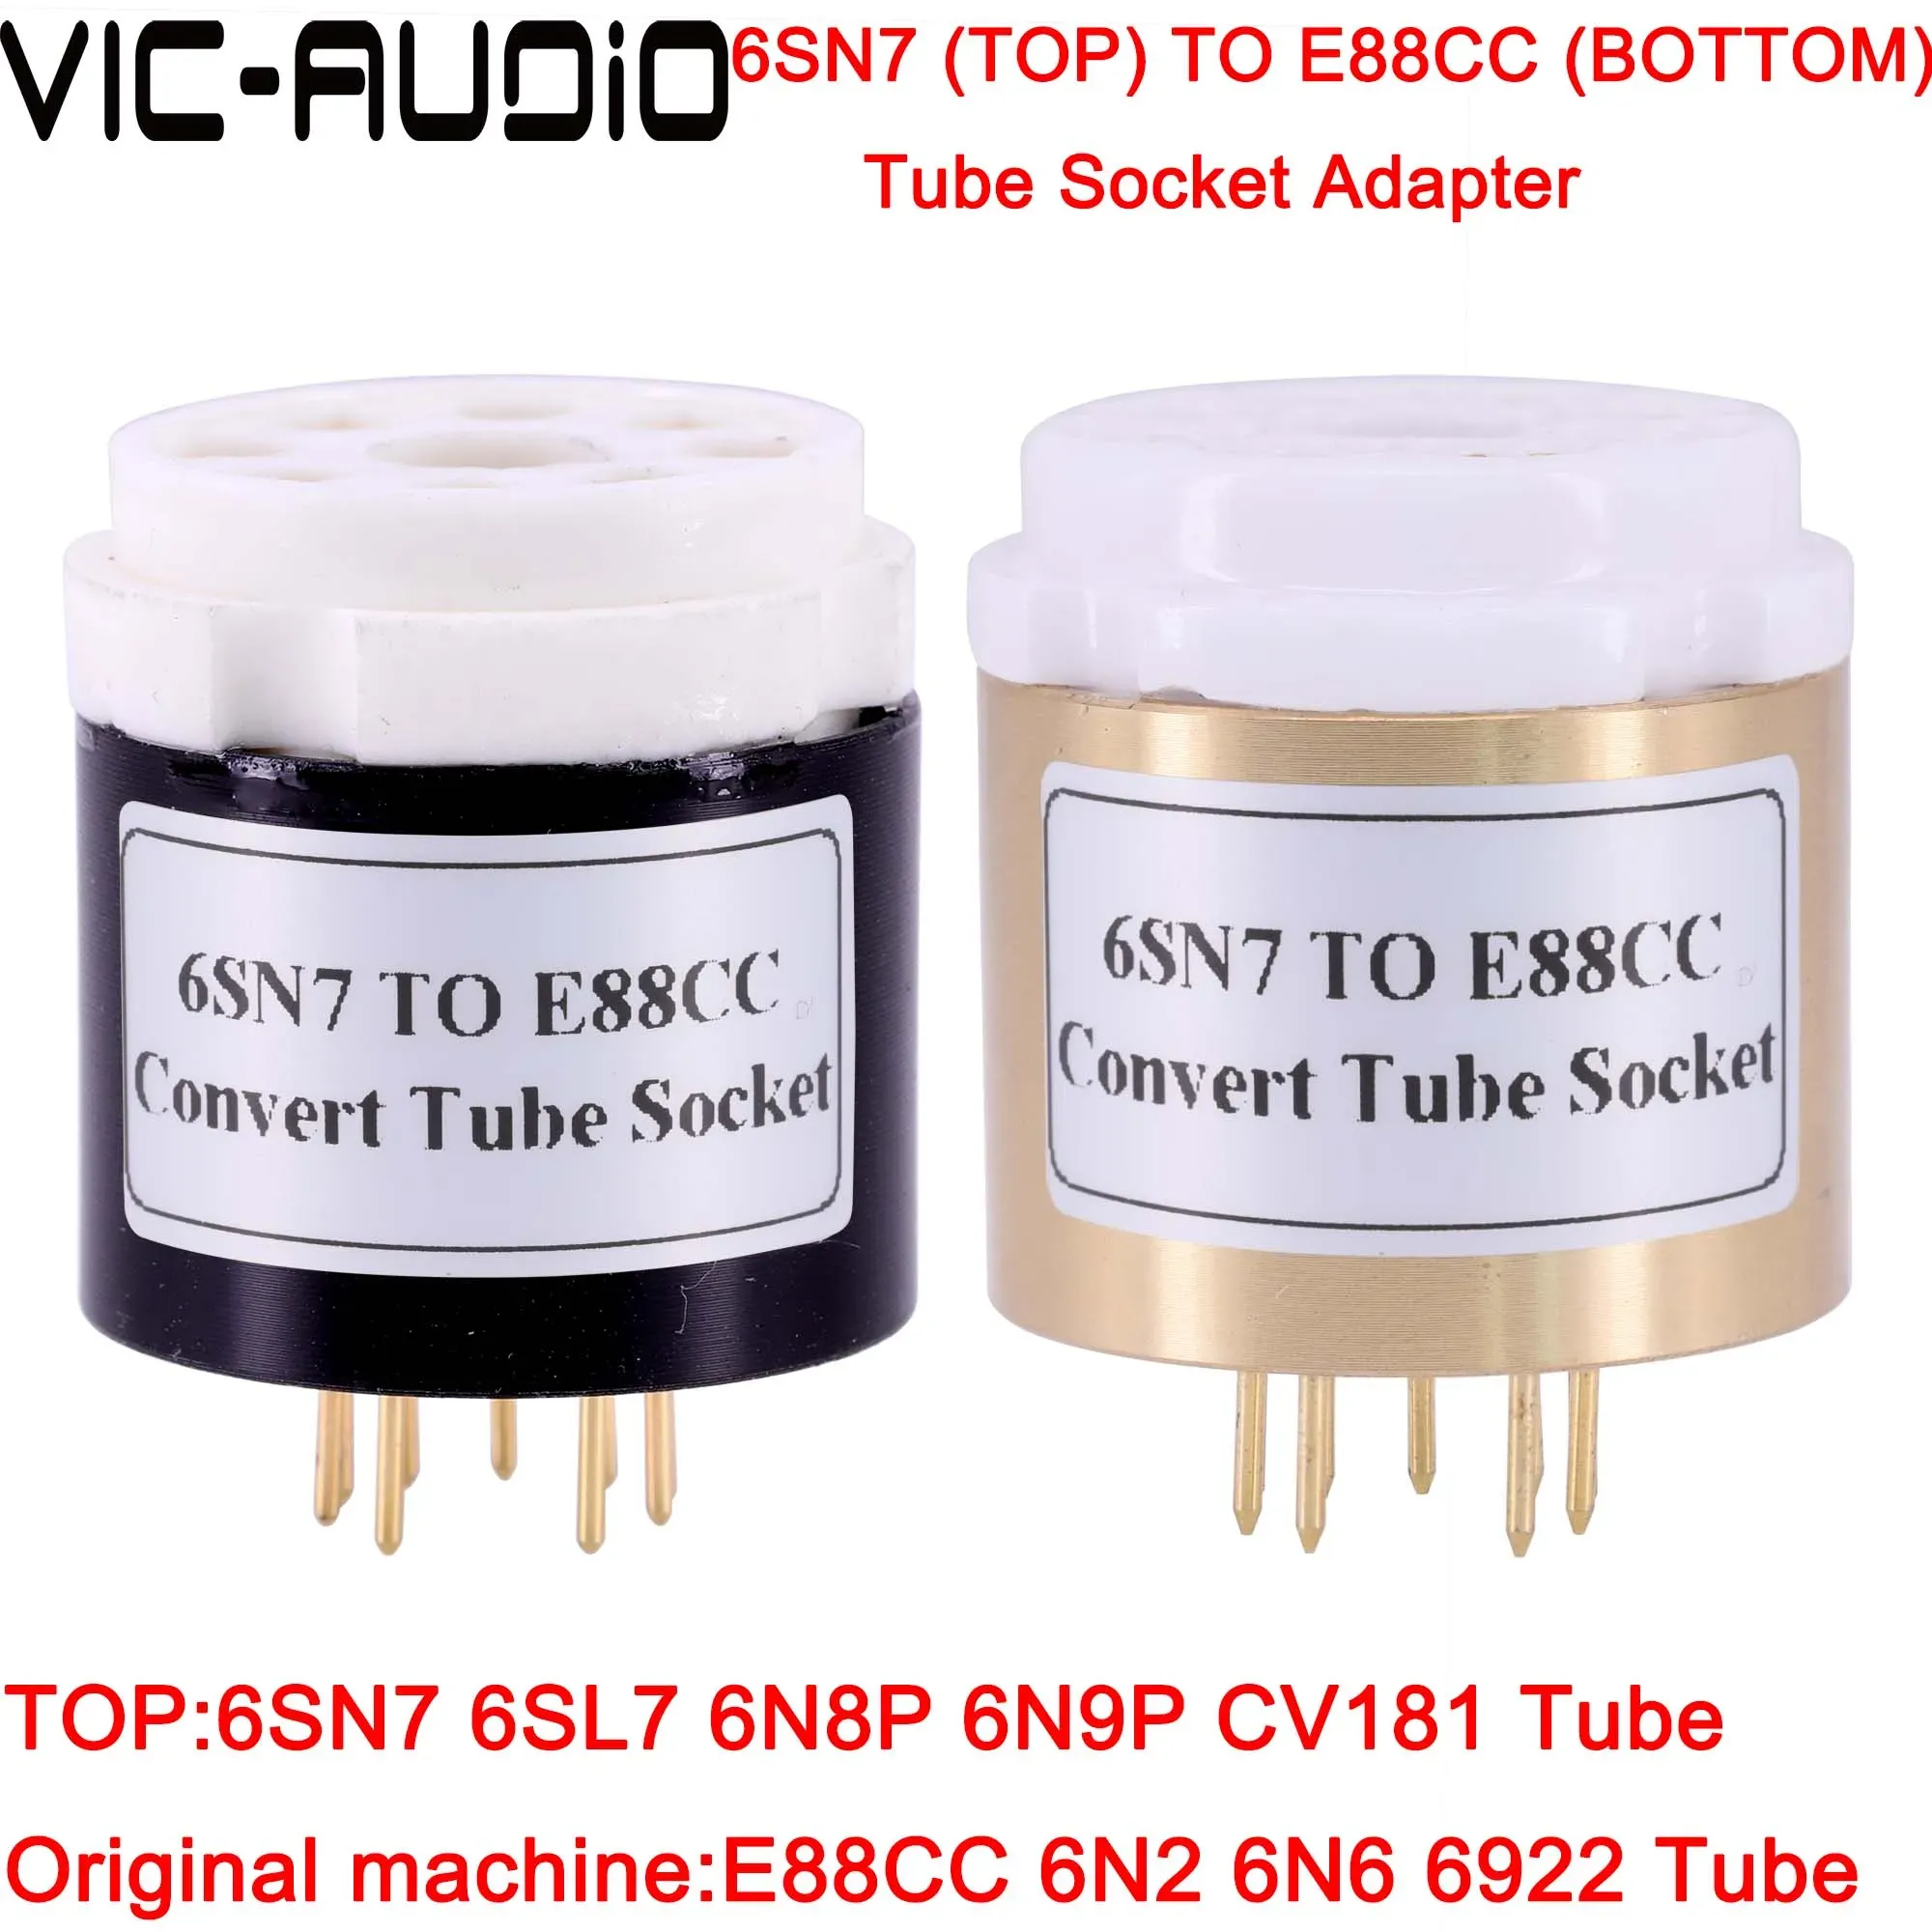 Amplifier 1pc Vakuumrohr CV181 6SL7 6N8P 6N9P 6SN7 bis E88CC ECC88 6DJ8 6N2 6922 DIY Audio Vakuum -Rohr -Verstärker -Verstärker -Konvertier -Sockeladapter